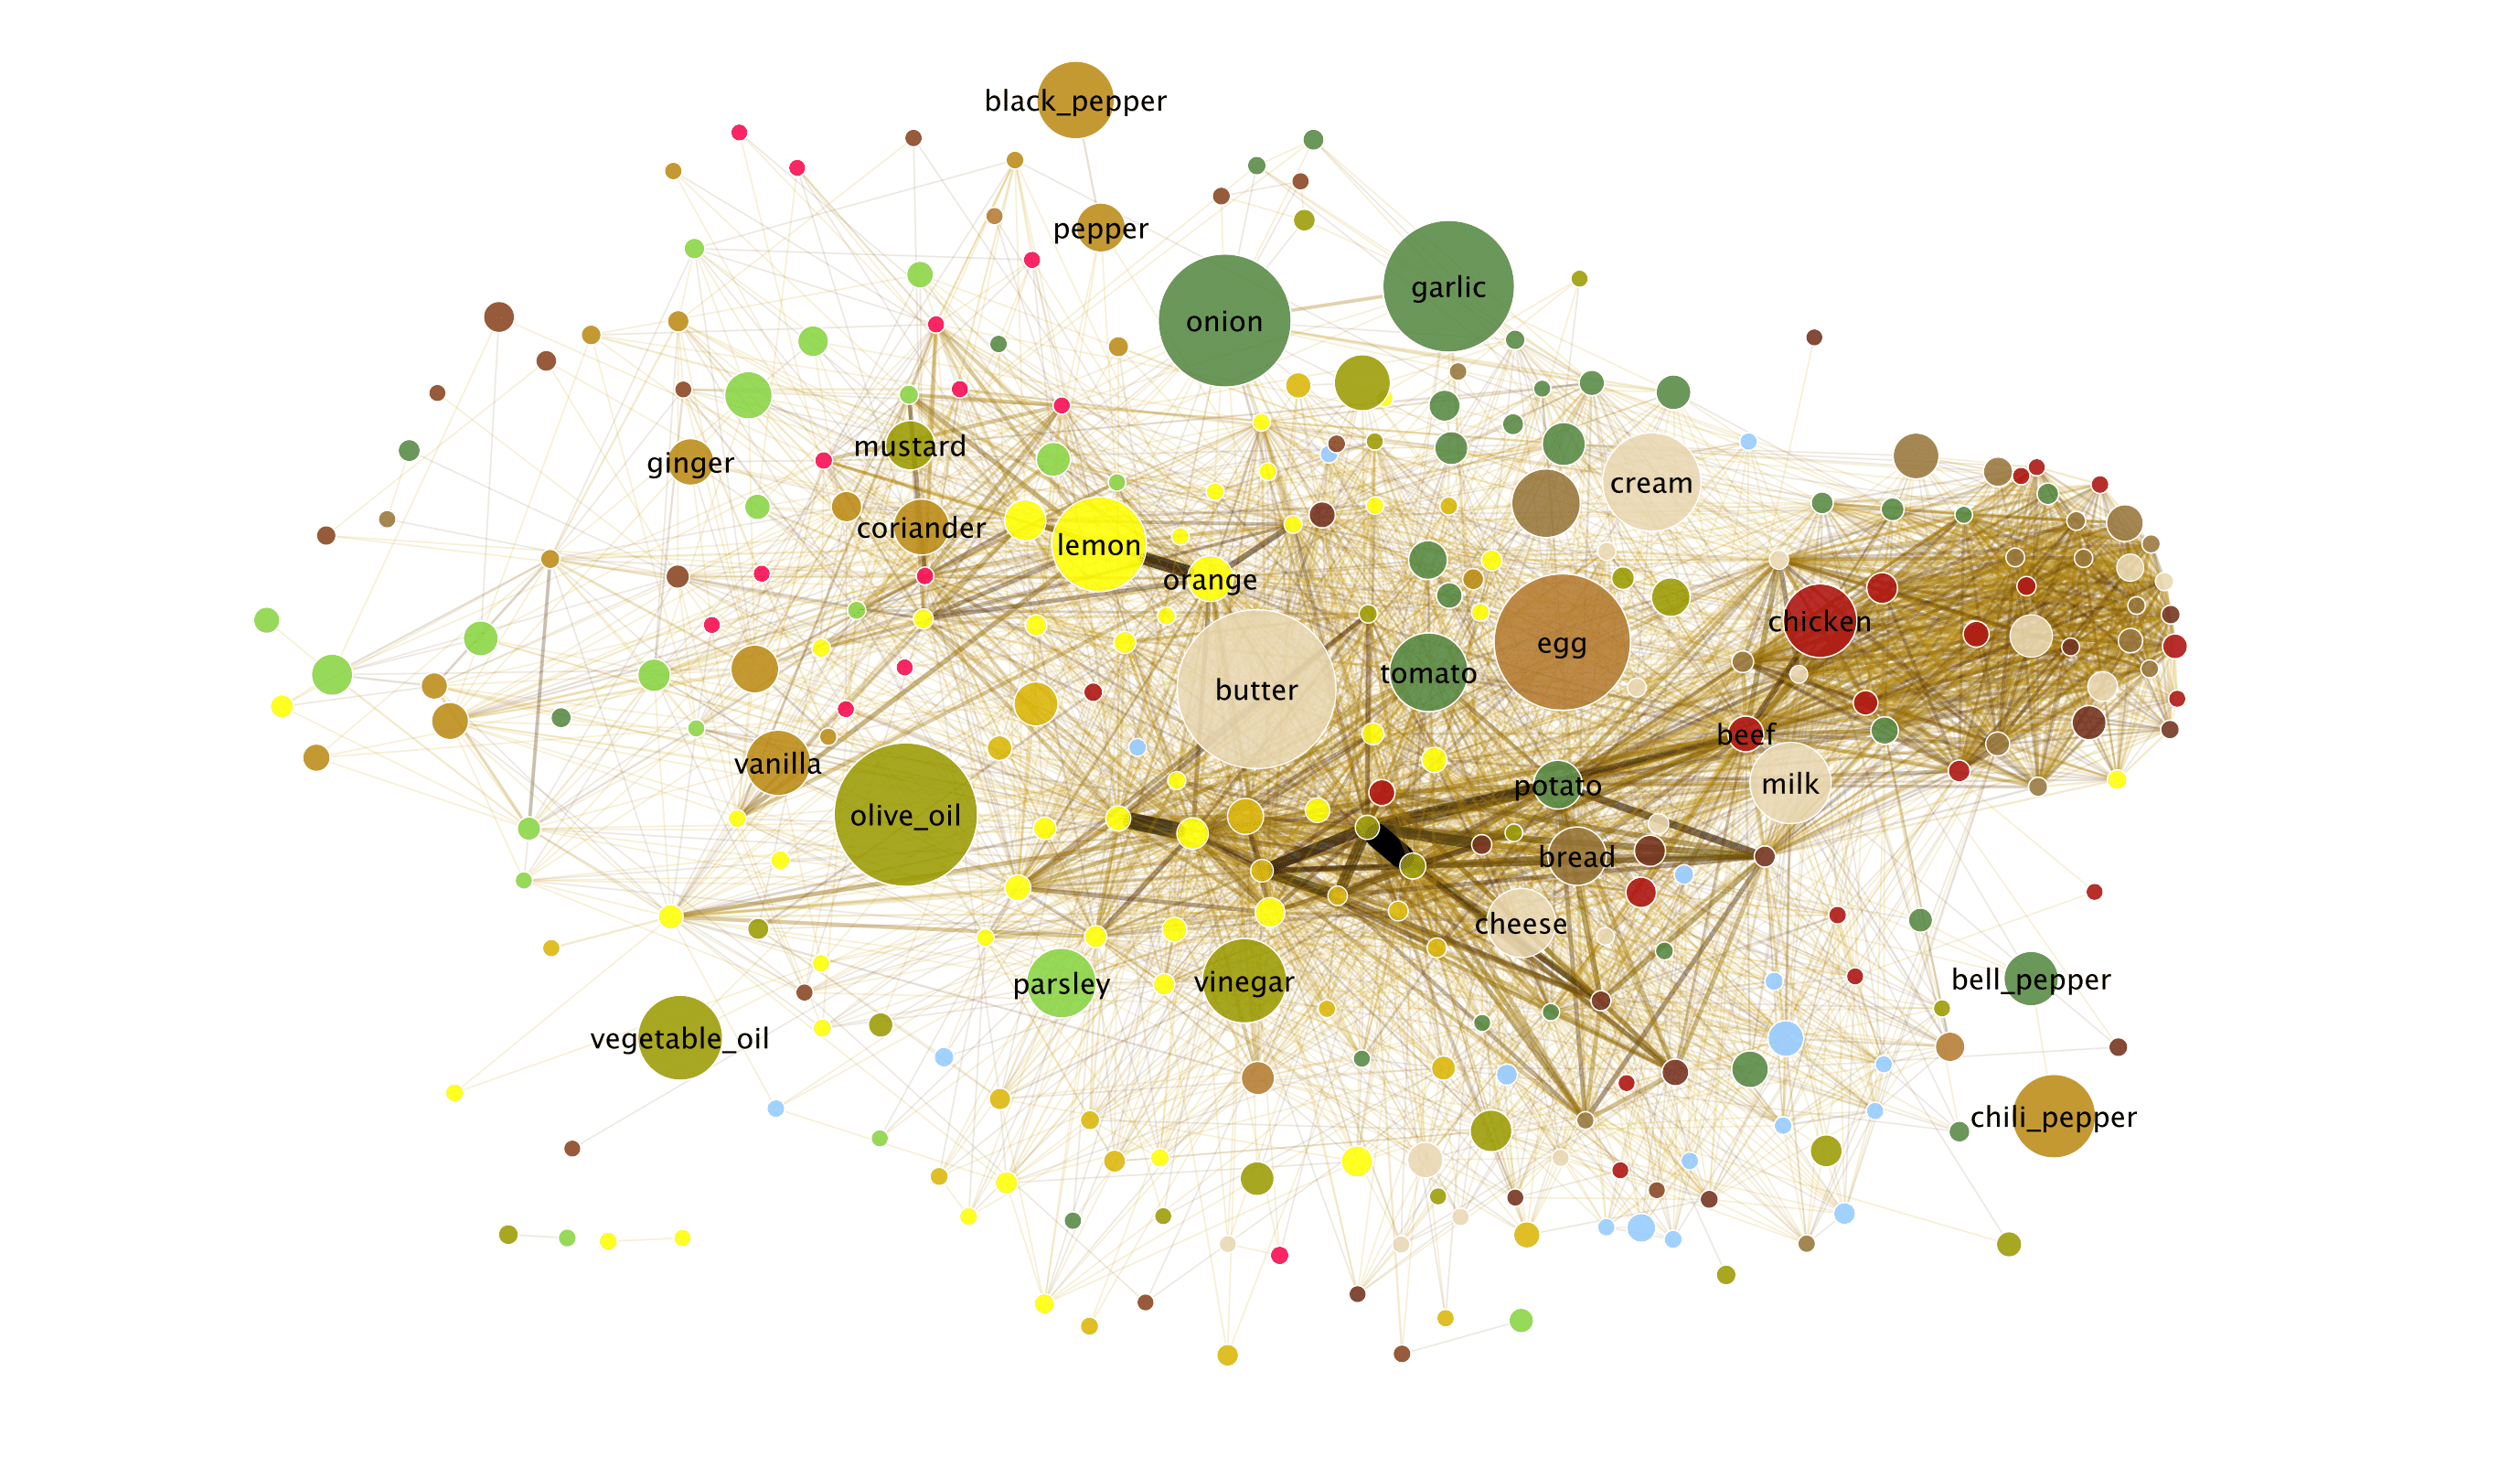 Frühere Version des »Flavor Network« (farbige Punkte, durch Linien verbunden)